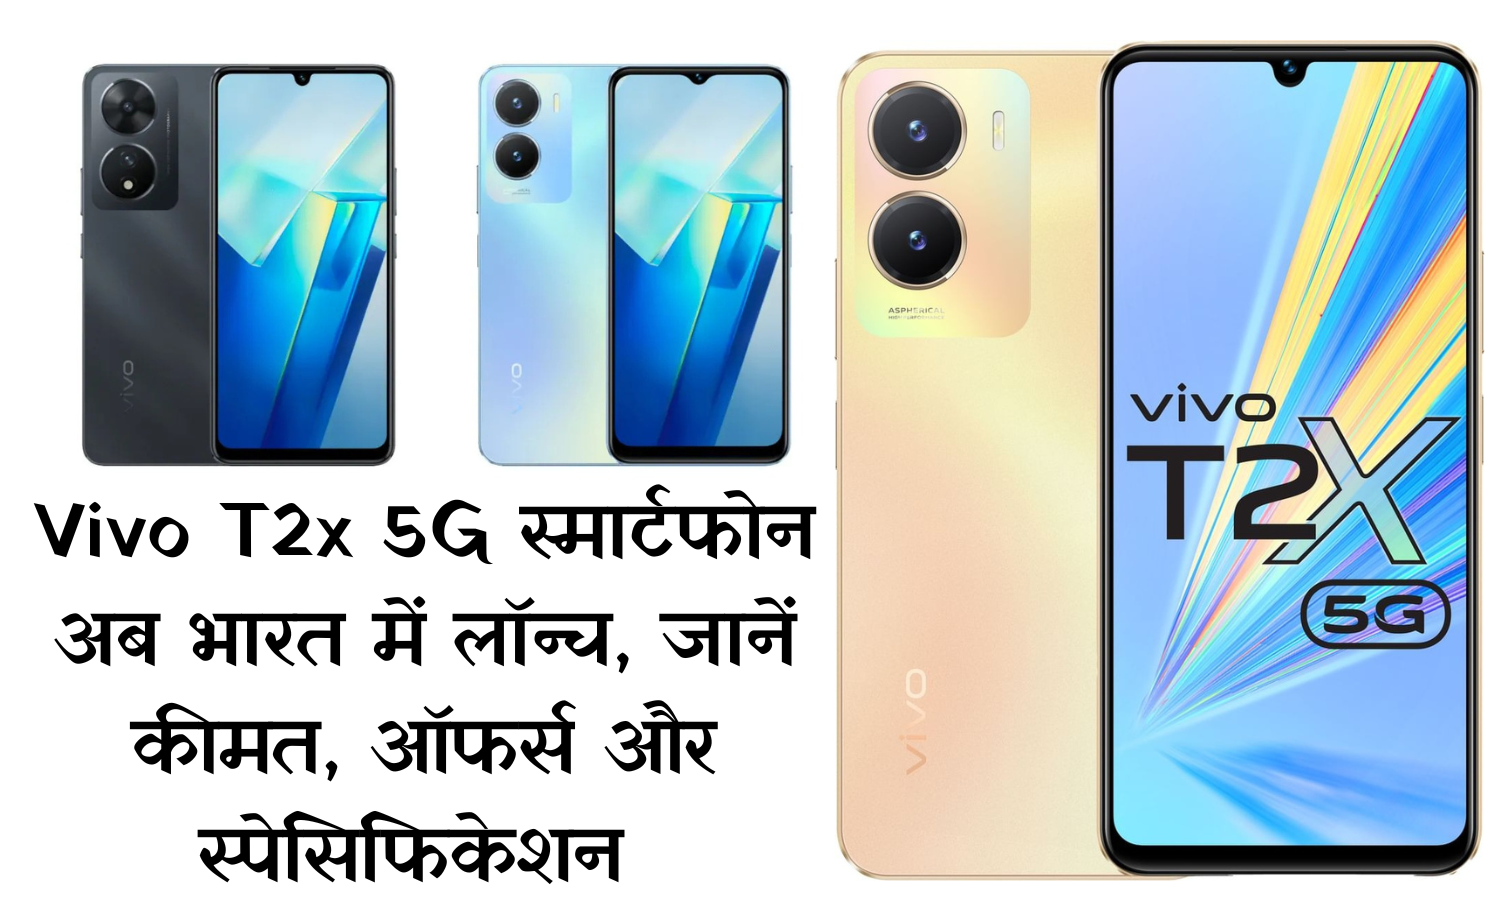 Vivo T2x 5G स्मार्टफोन अब भारत में लॉन्च, जानें कीमत, ऑफर्स और स्पेसिफिकेशन